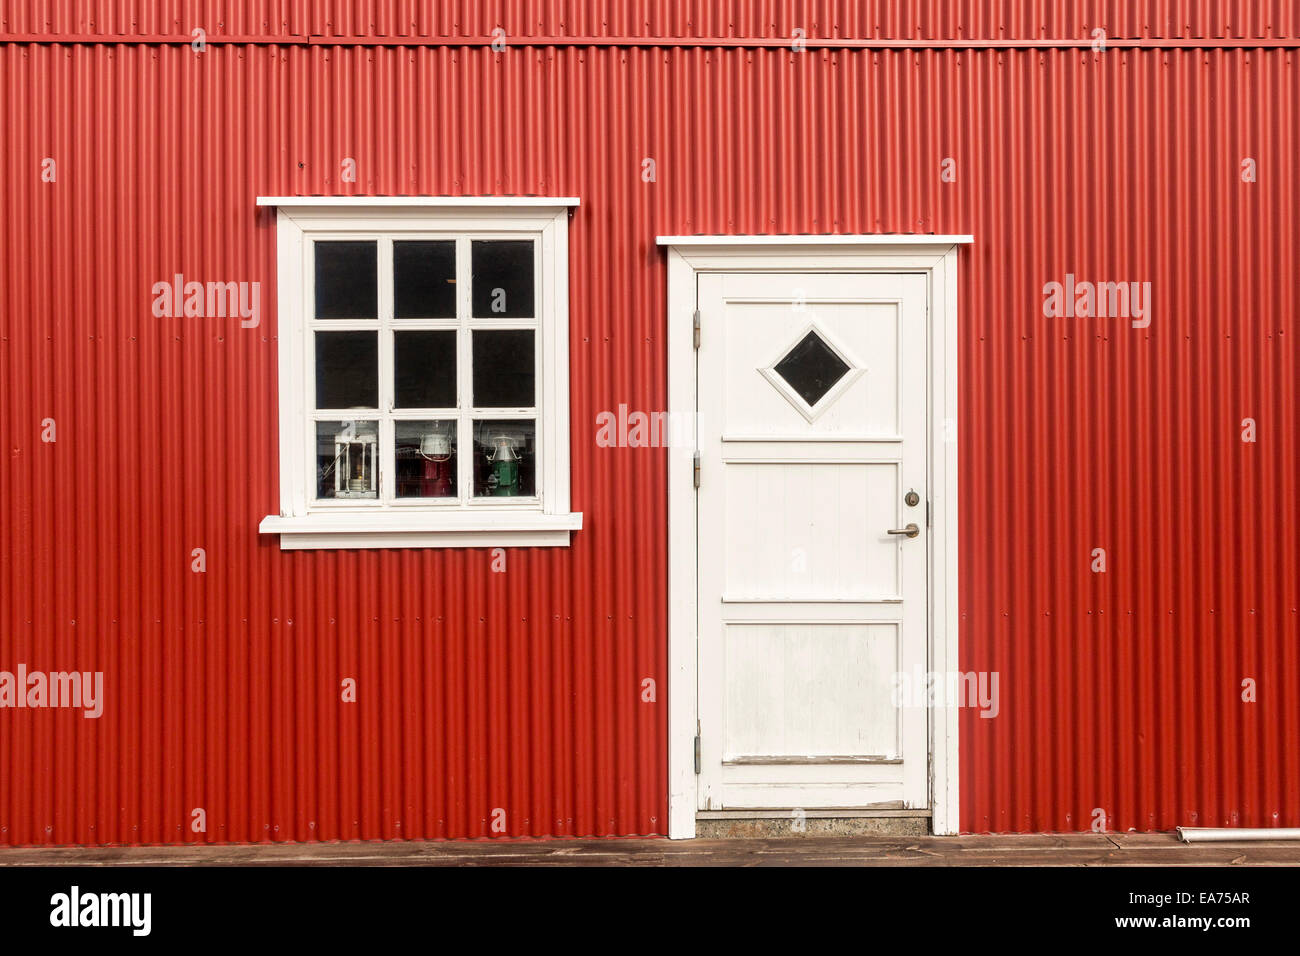 Die Außenseite eines Gebäudes in Ost-Island. Das gewellte Metall äußere ist typisch für ein Gebäude in Ost-Island. Stockfoto